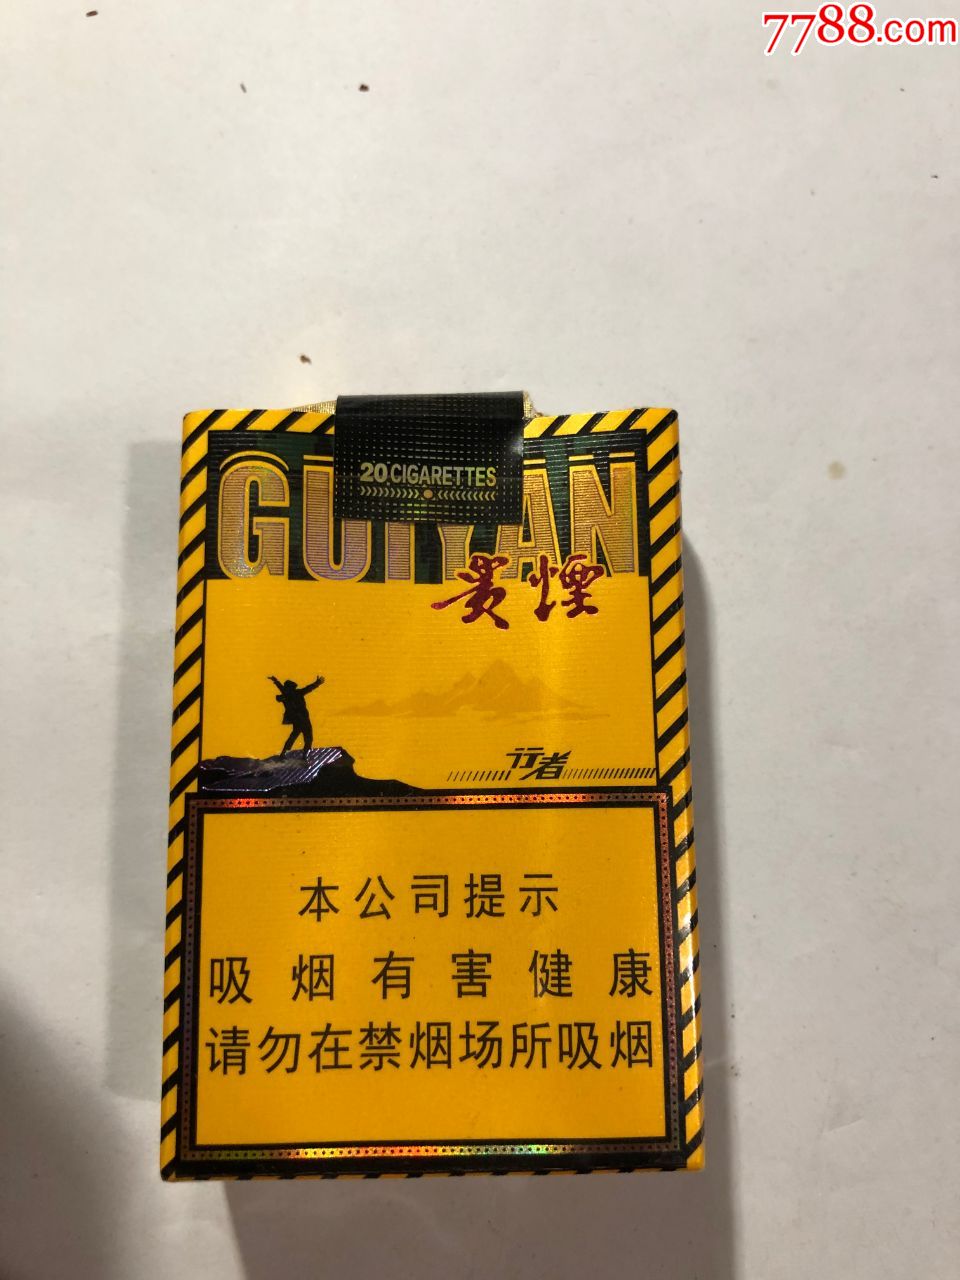 贵烟,行者,软卡标-烟标/烟盒-7788收藏__收藏热线